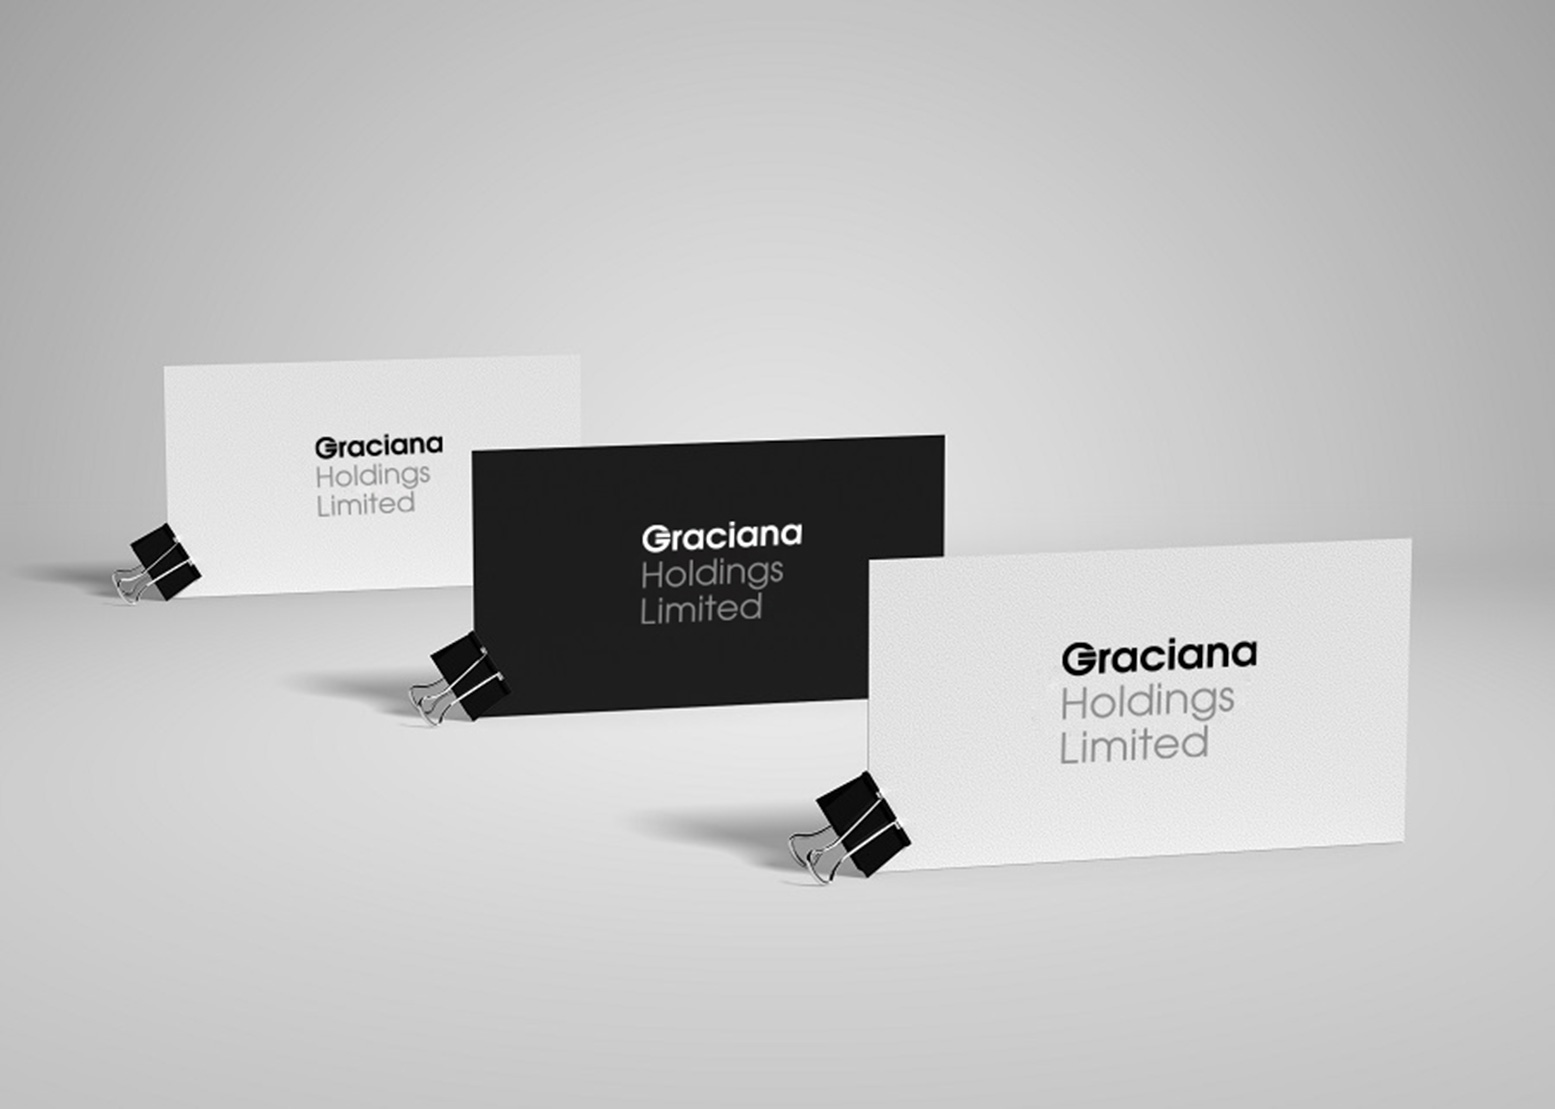 Разработка логотипа для финансовой компании Graciana Holdings Limited